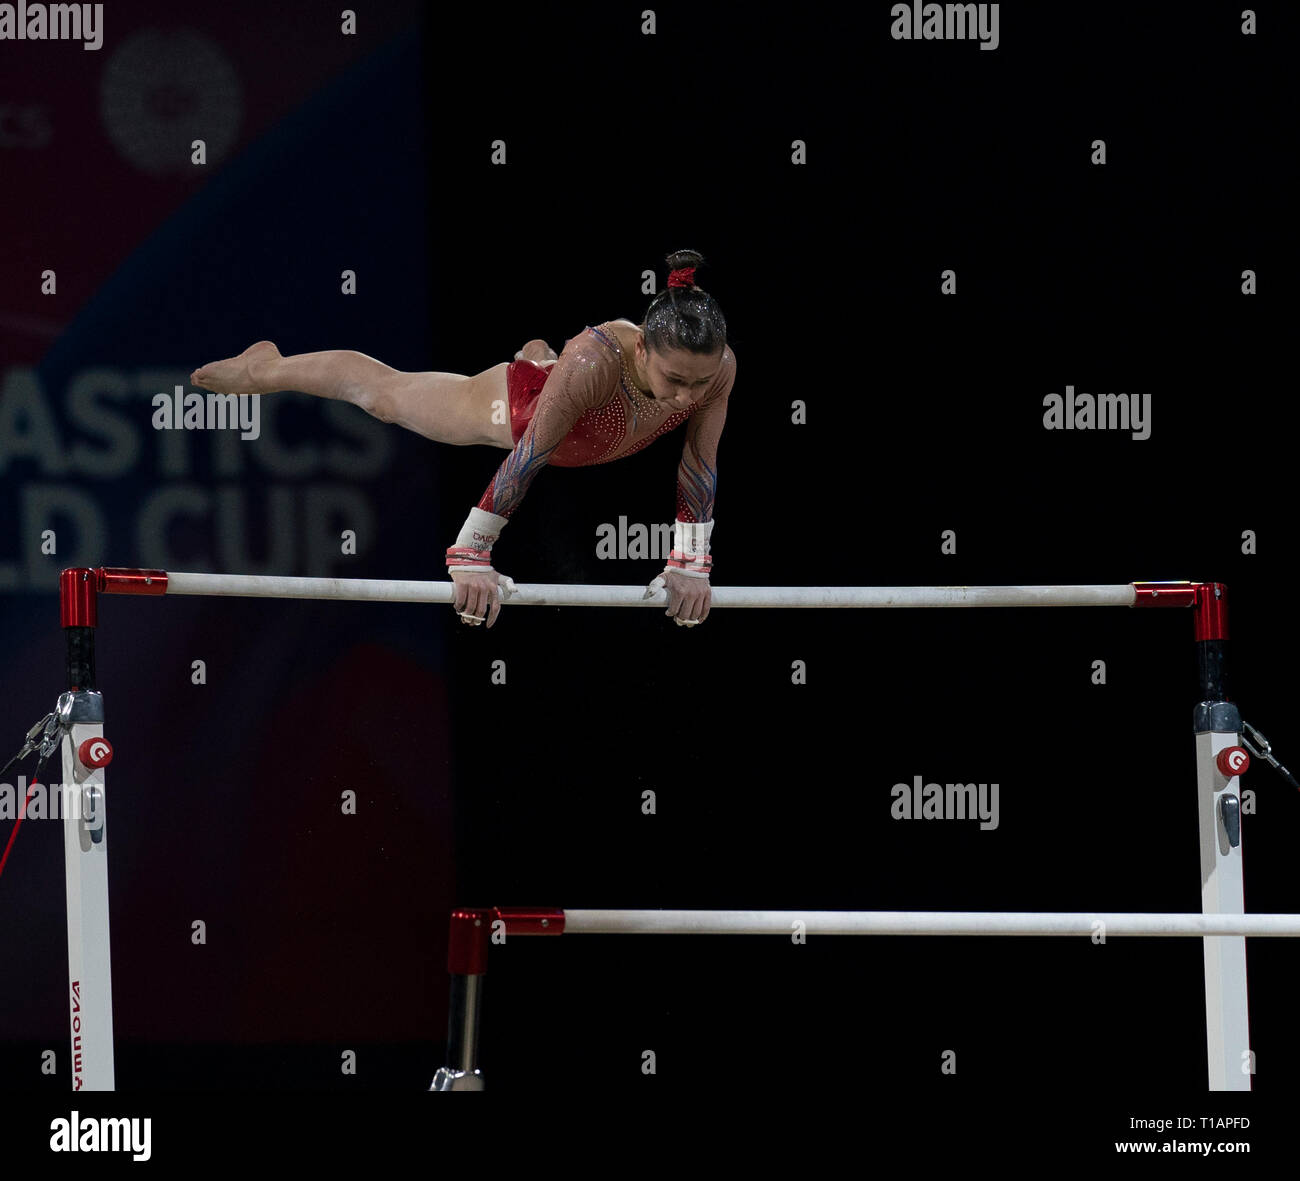 Carolann Heduit (France) vu en action lors de la Coupe du Monde de Gymnastique 2019 à Birmingham dans l'Arène de Genting. Banque D'Images